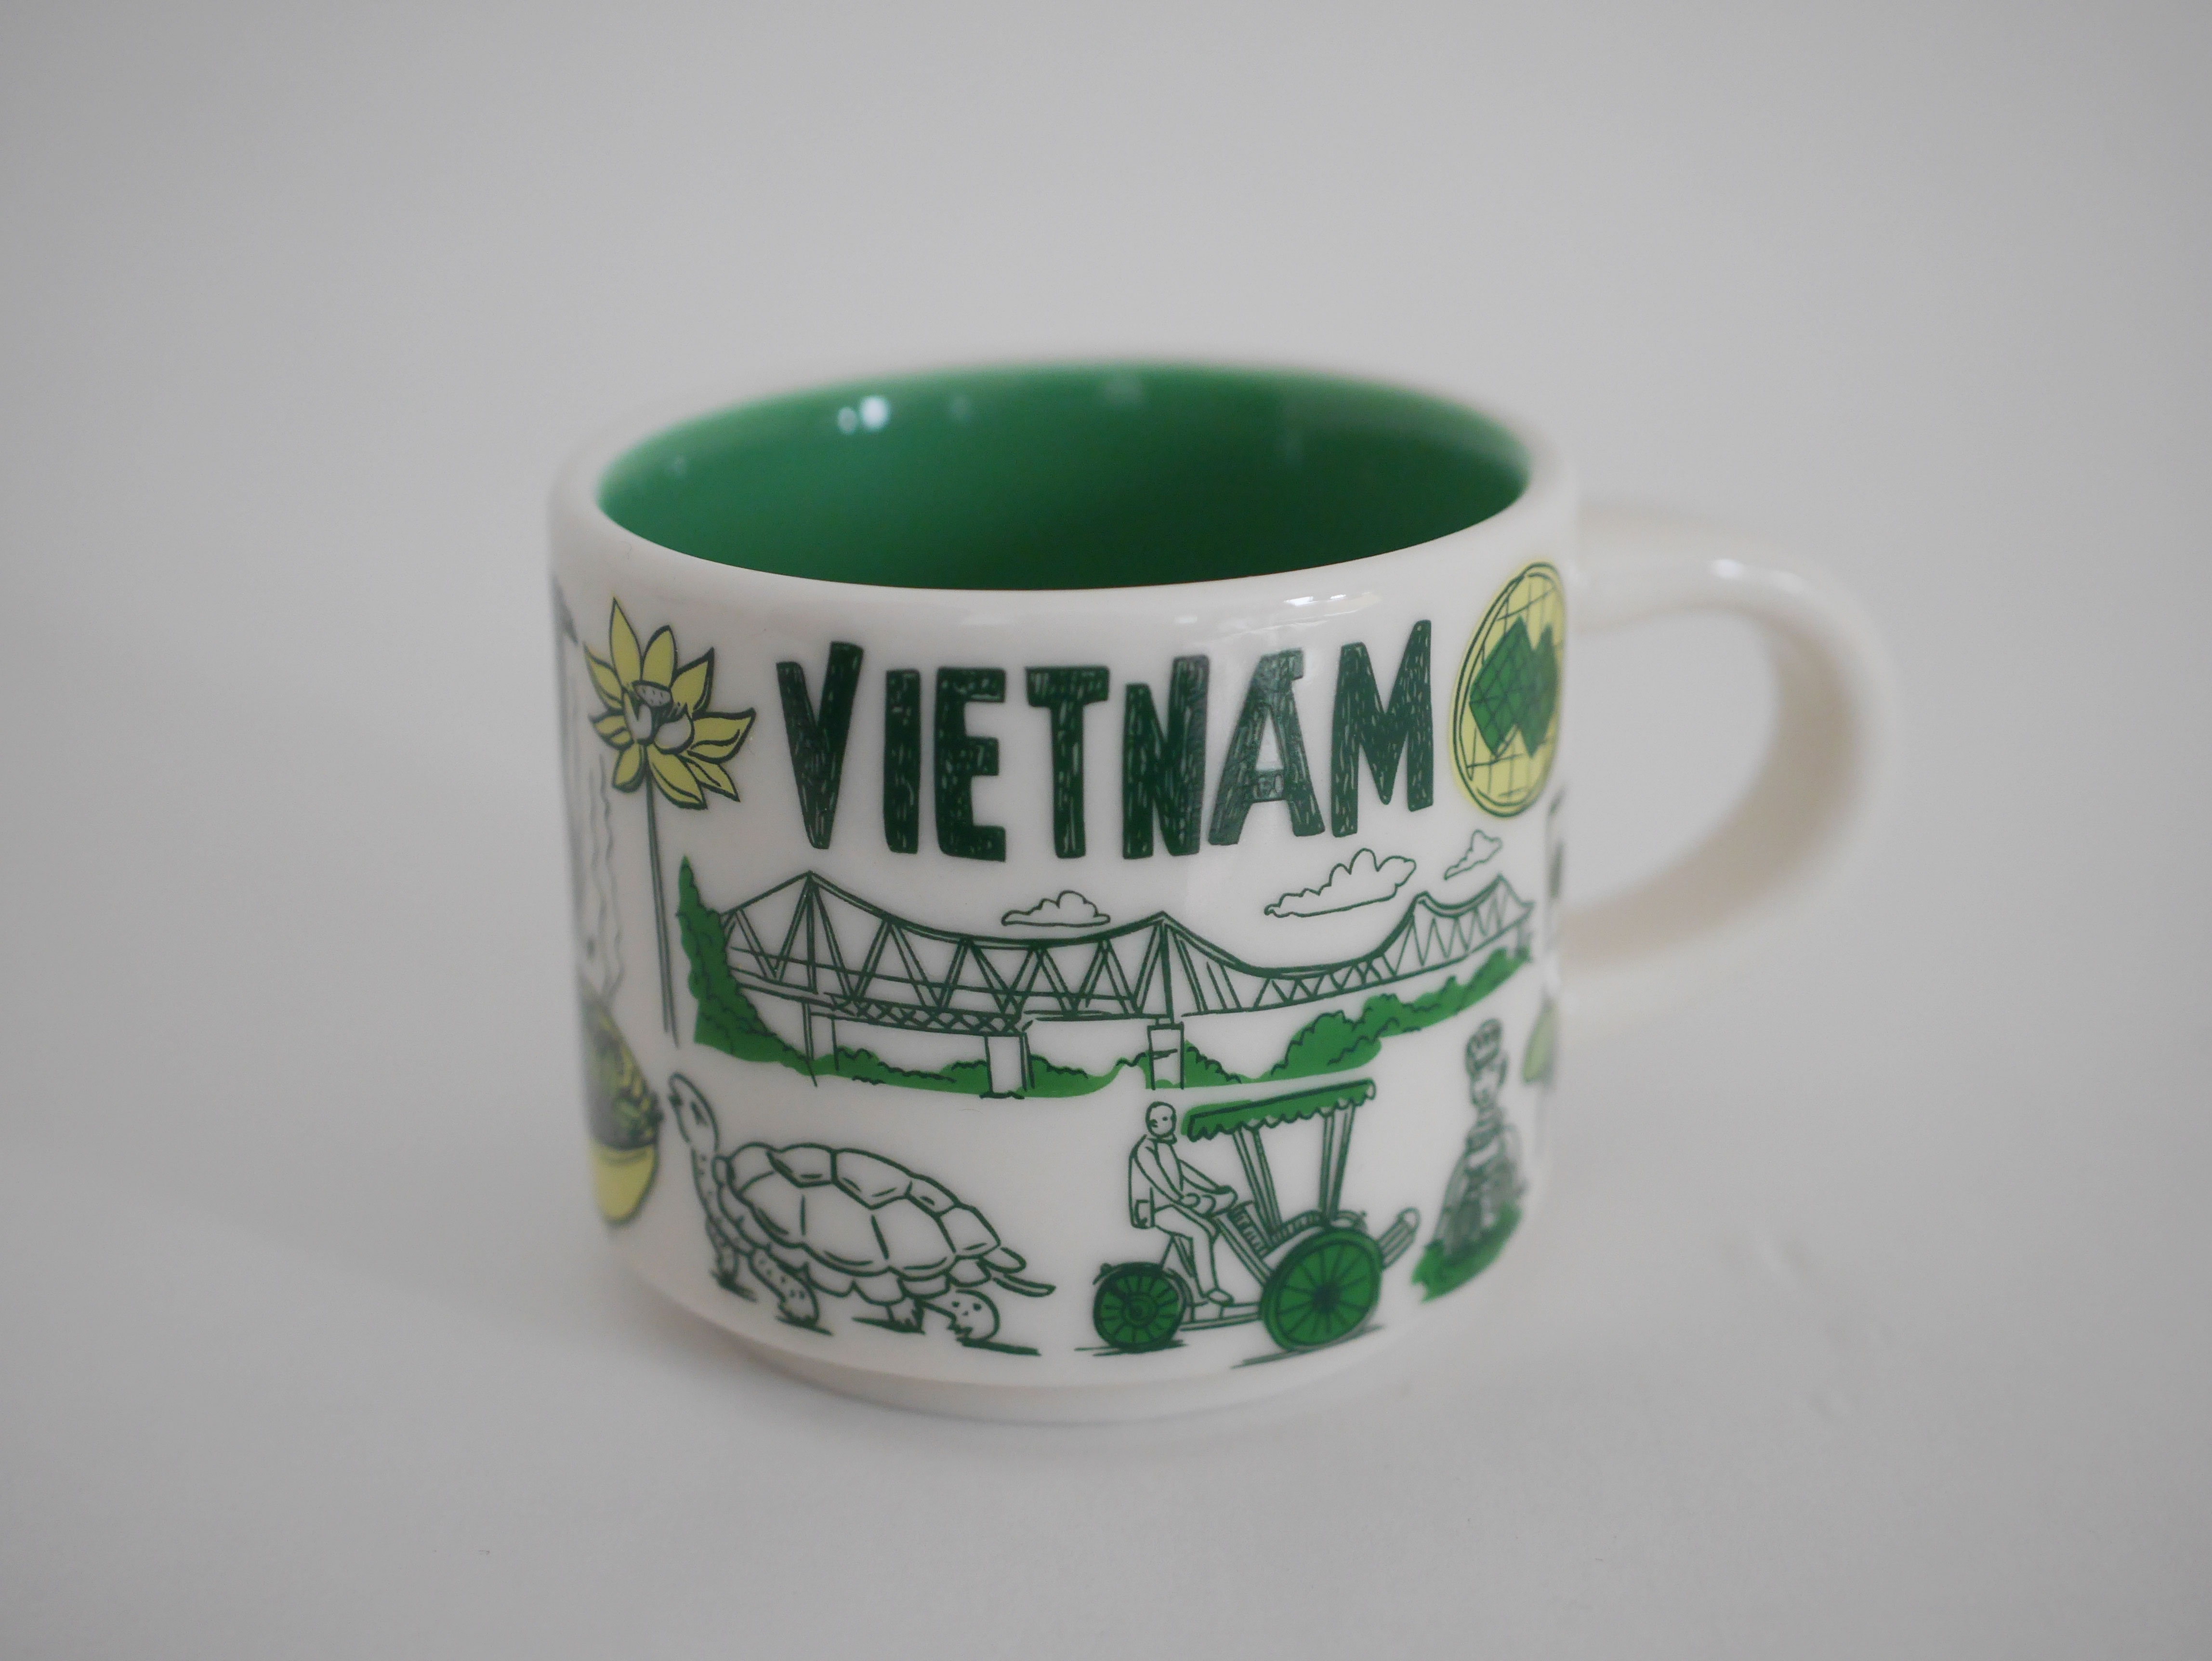 イラストがカワイイ スタバ限定のベトナムコーヒーカップをお土産に